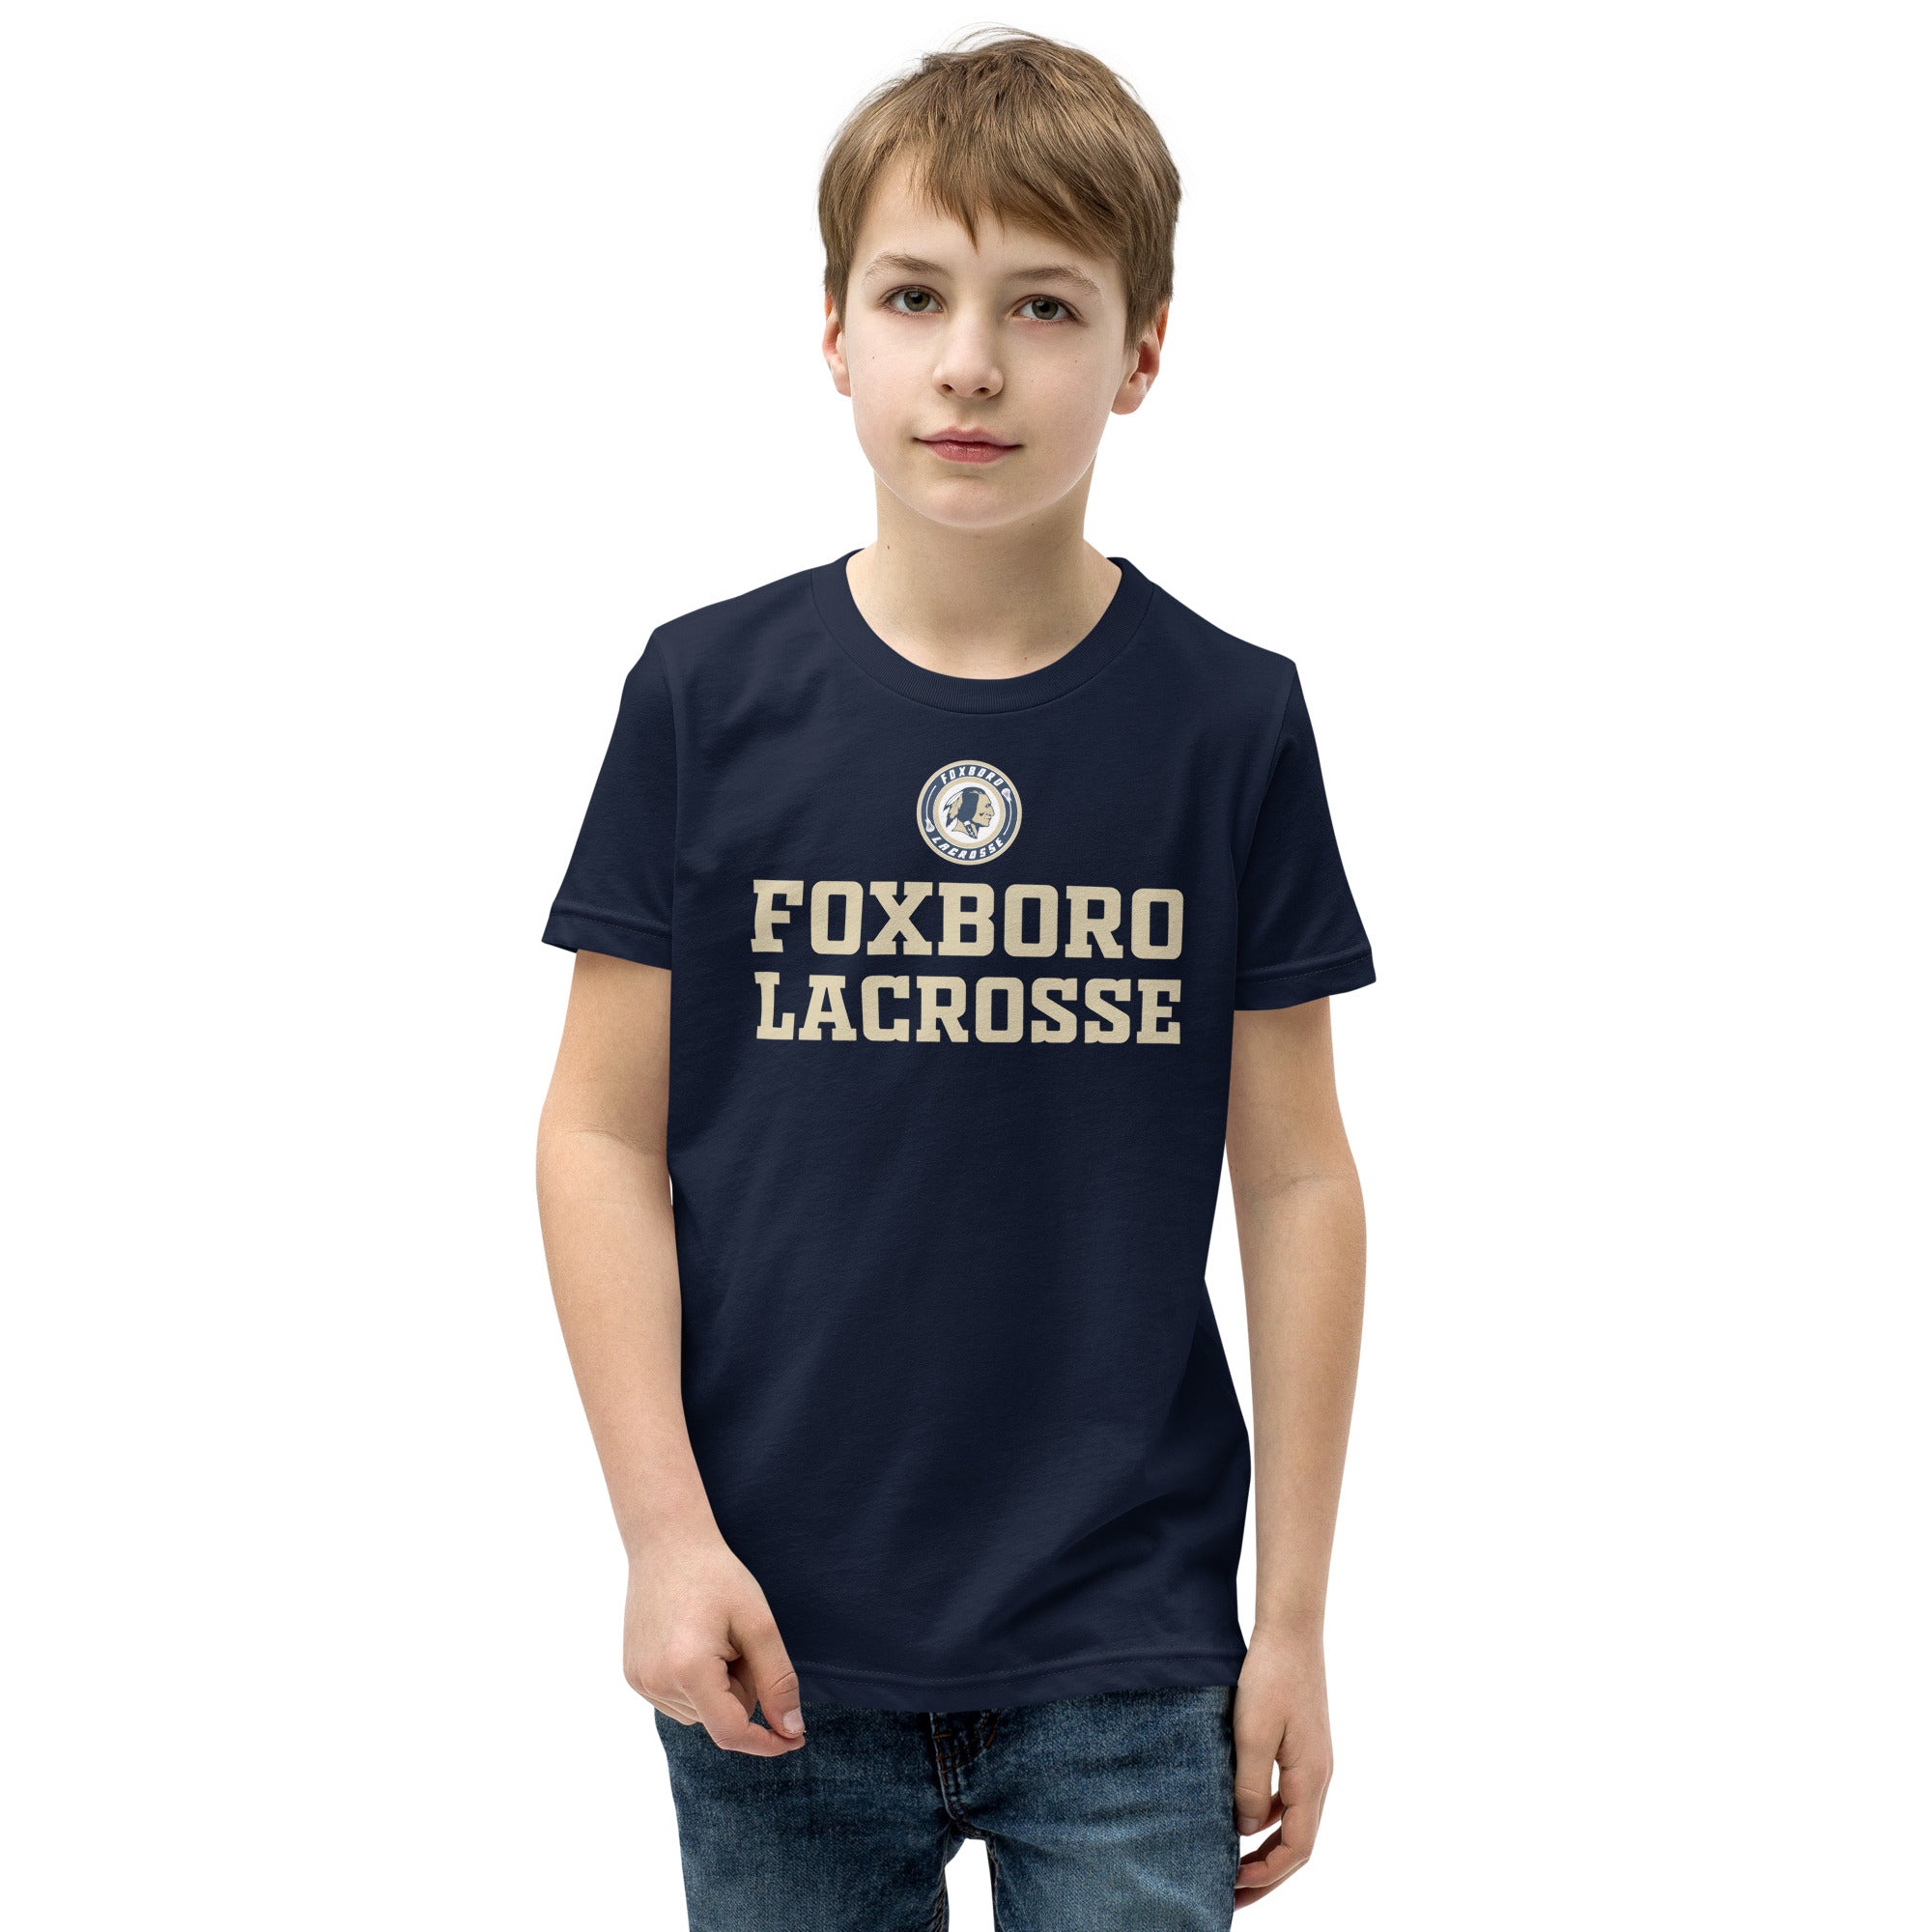 Foxboro Youth Short Sleeve T-Shirt